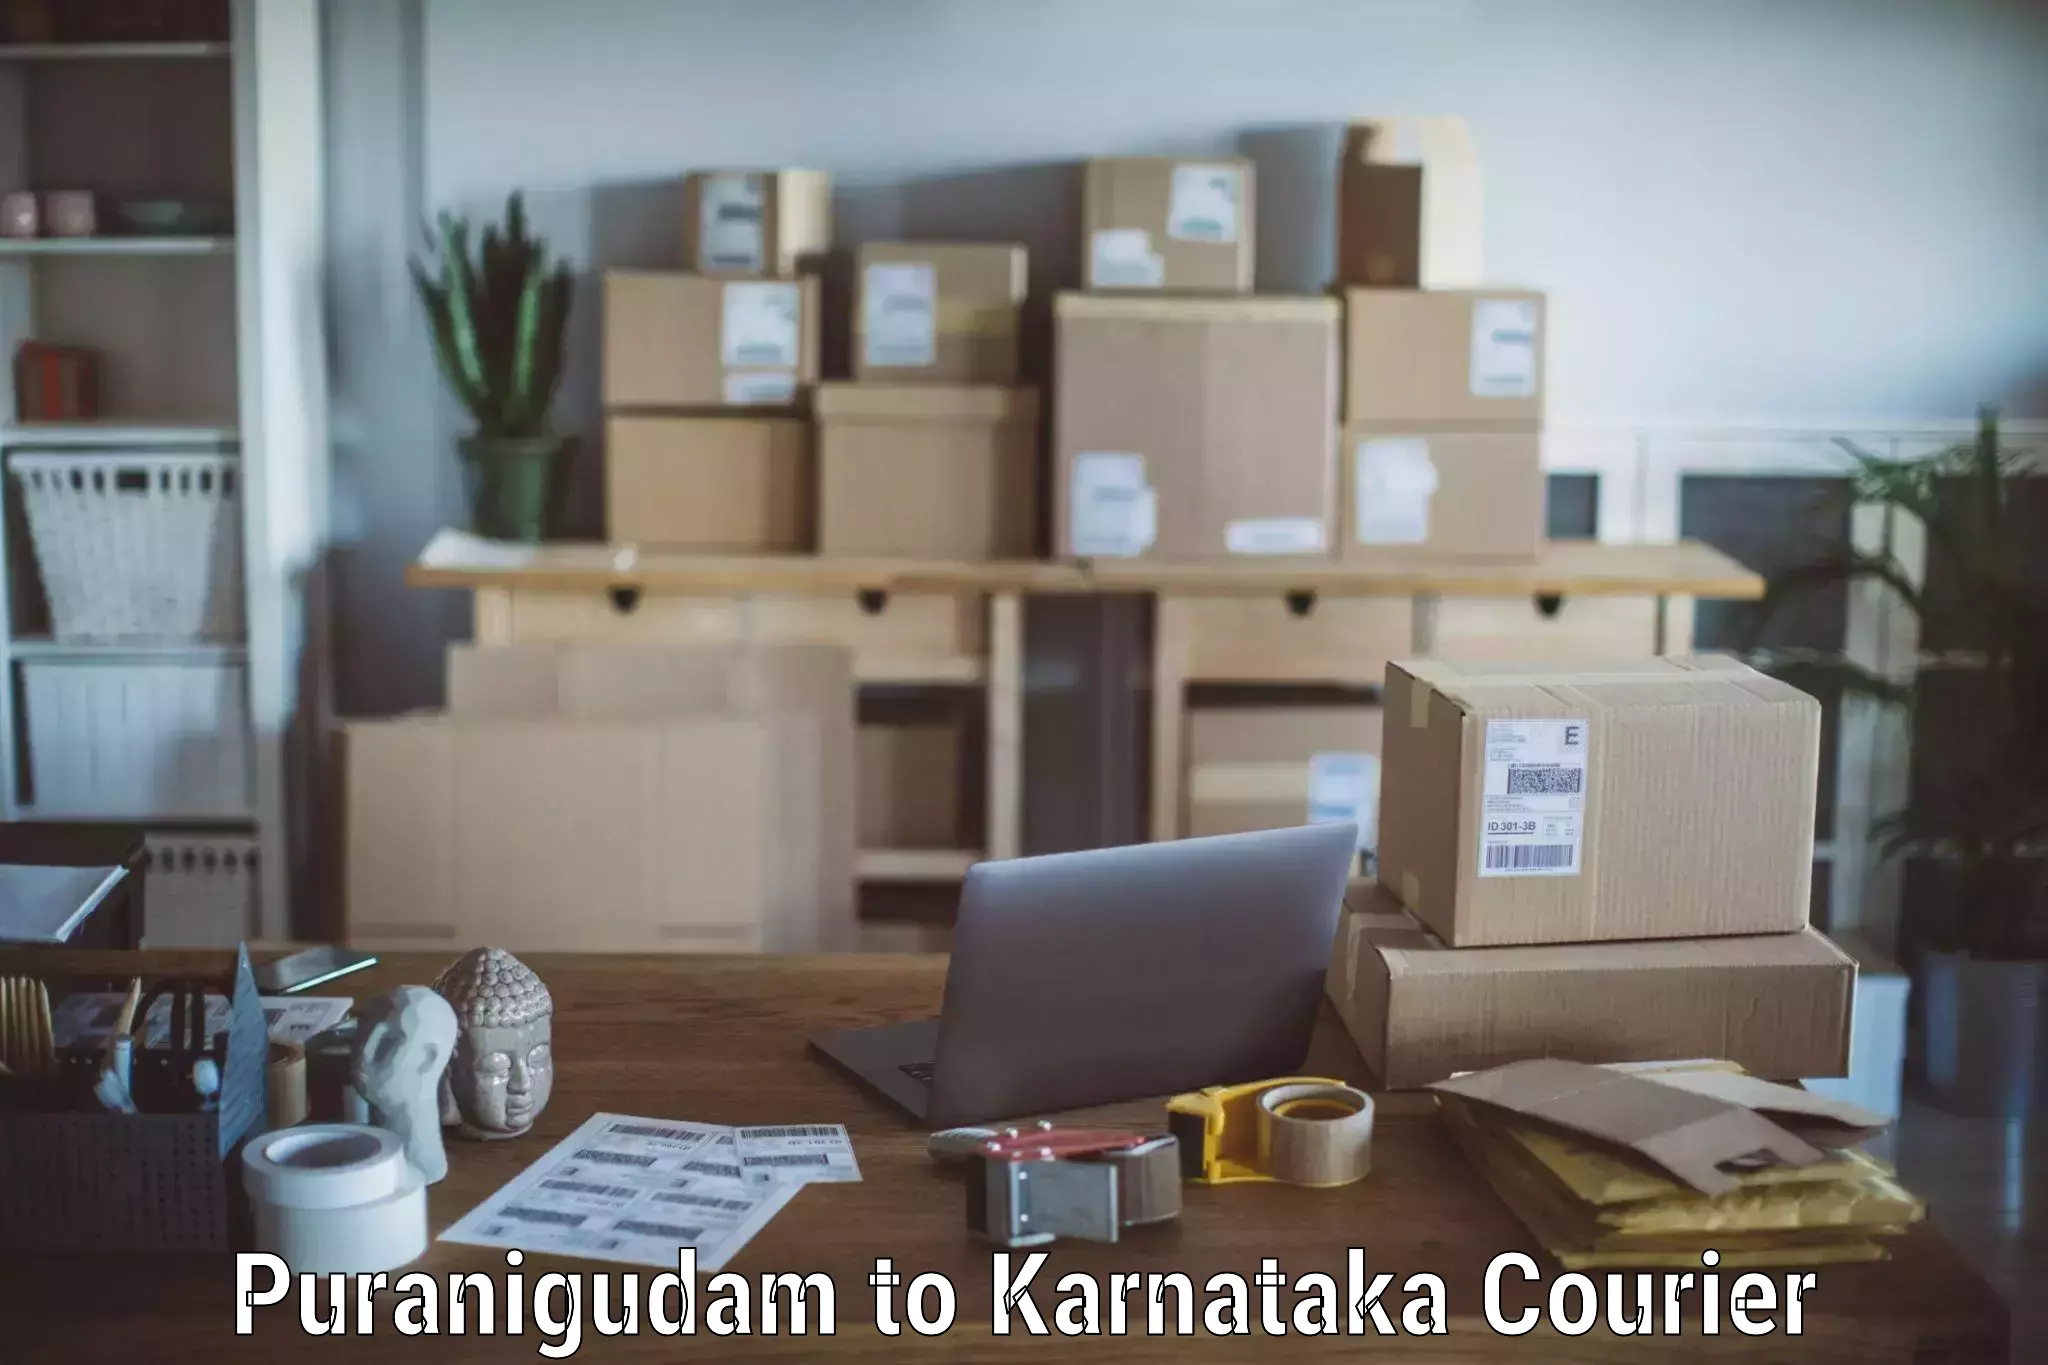 Furniture delivery service Puranigudam to Mangalore